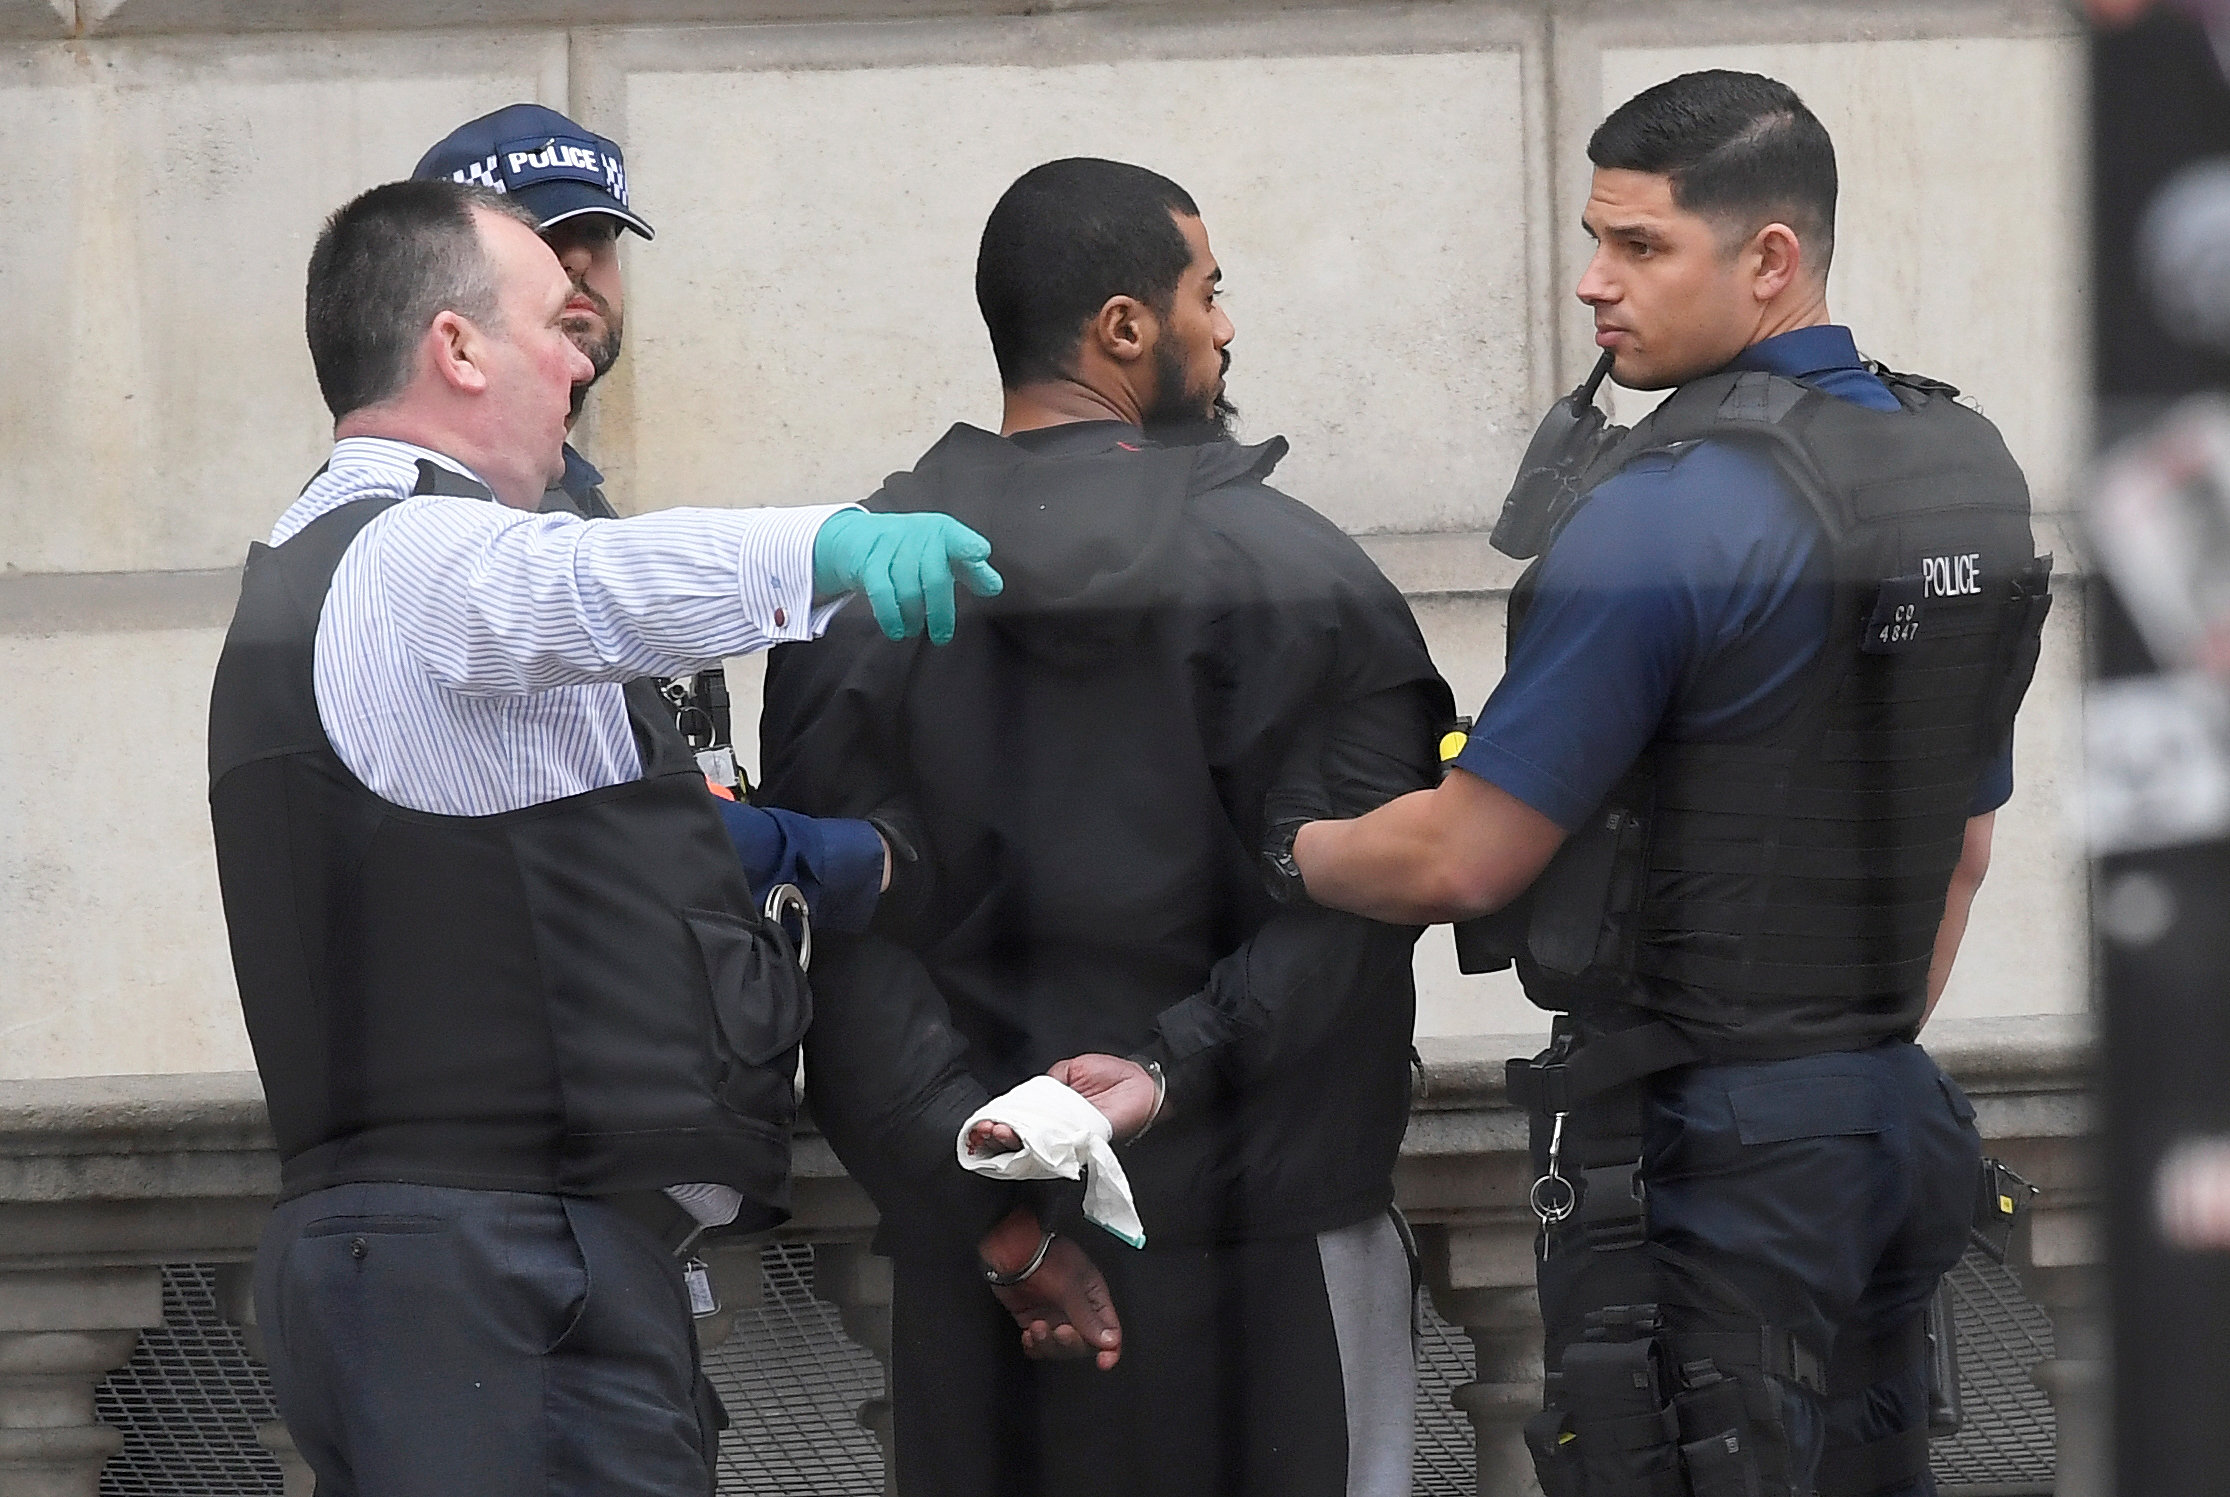 بالصور.. ضبط ملتحٍ يحمل سكاكين قرب البرلمان البريطاني